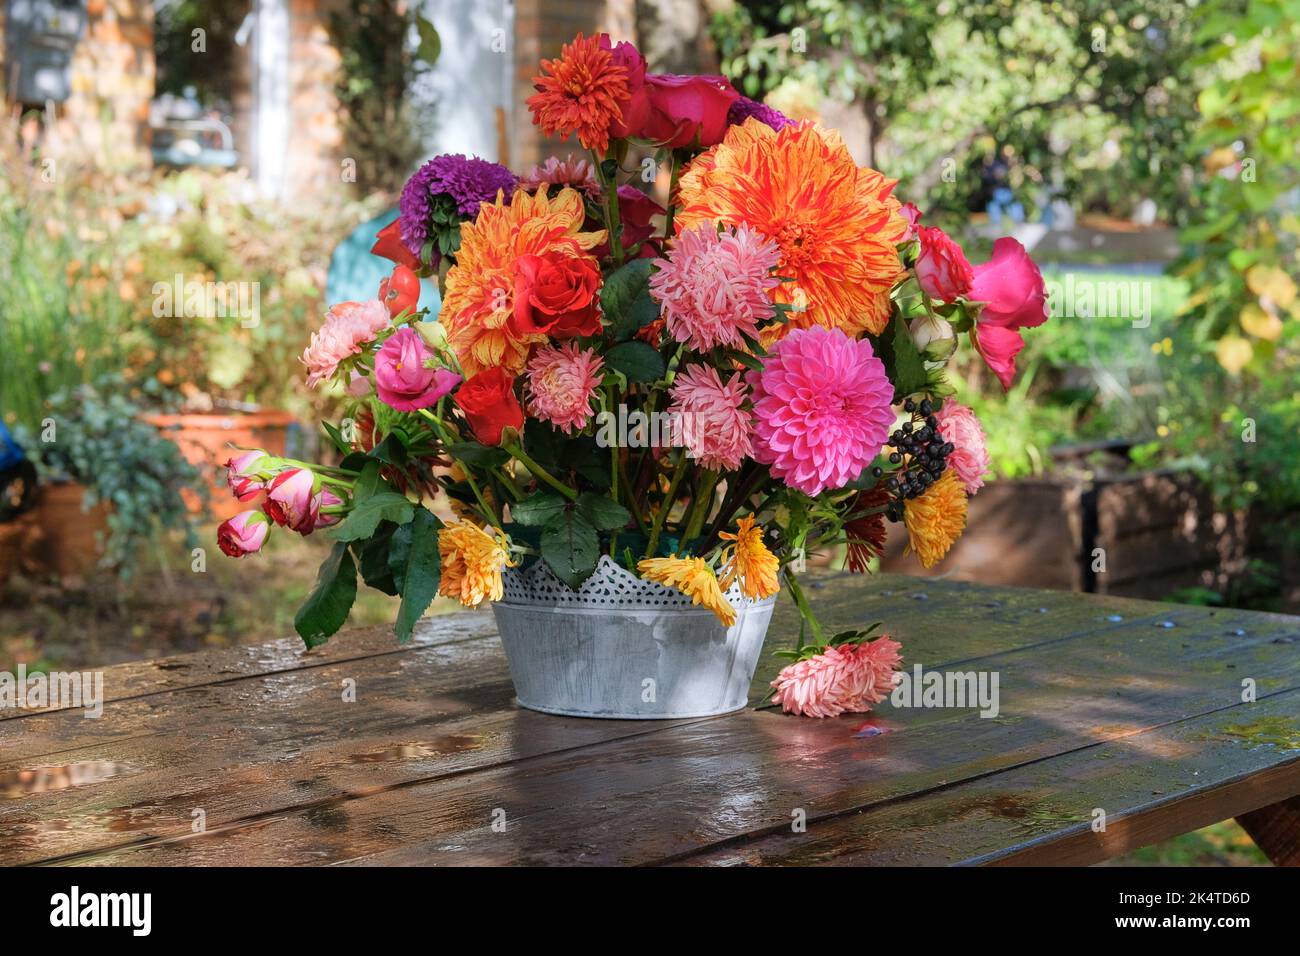 Blumen: rosen, Astern, Dahilia im Apfelgarten auf einem Holztisch. Floristisches Design. Sonniger Tag Stockfoto